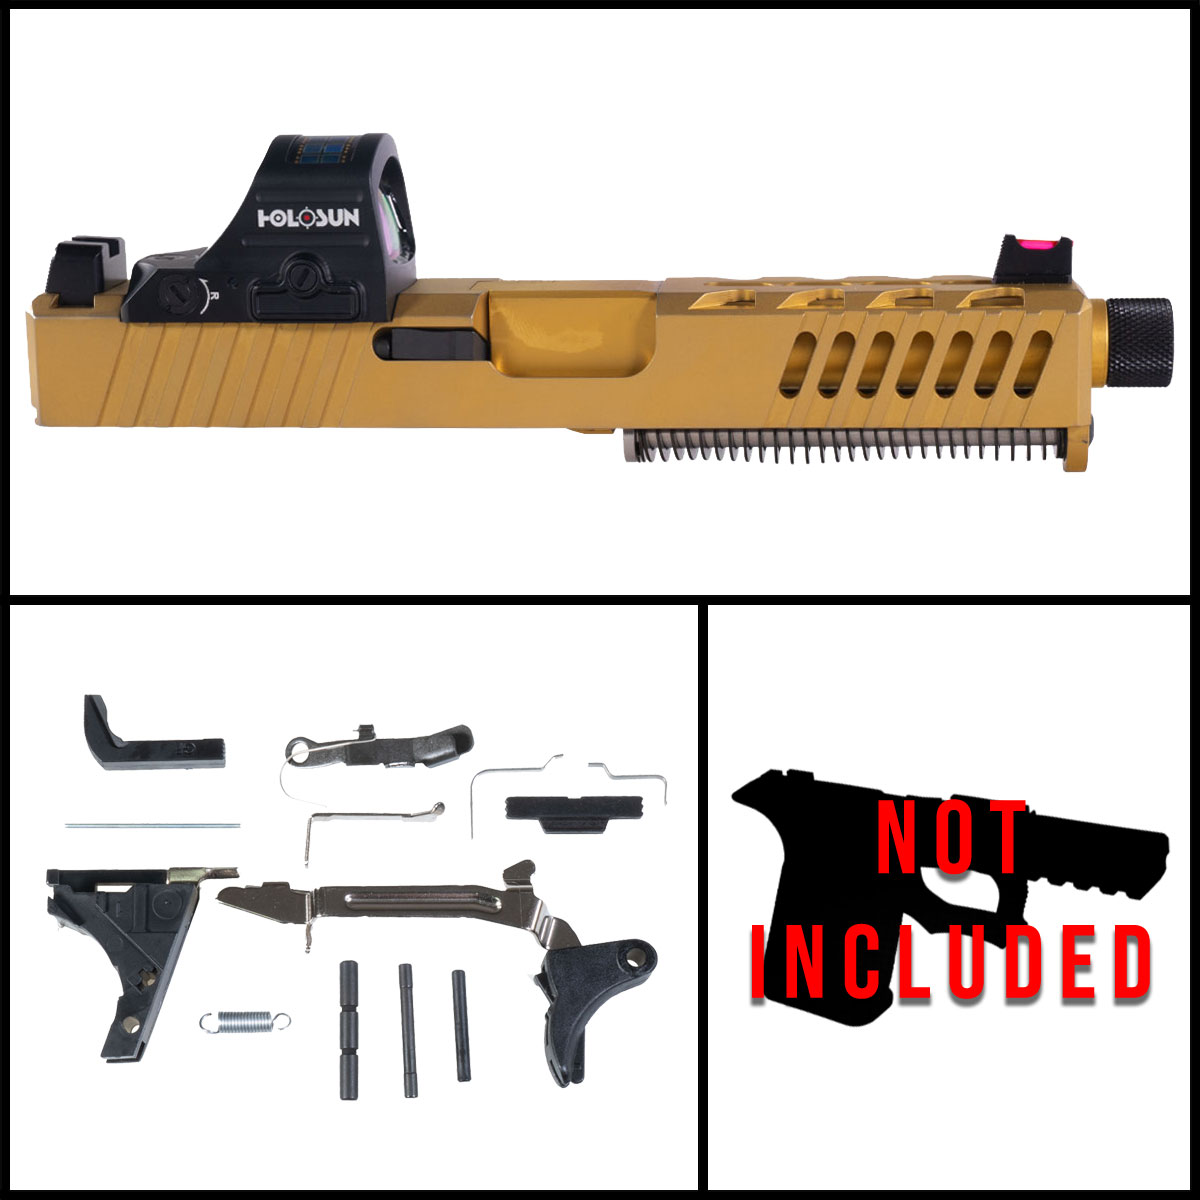 DTT 'King' 9mm Full Pistol Build Kit (Everything Minus Frame) - Glock 19 Compatible